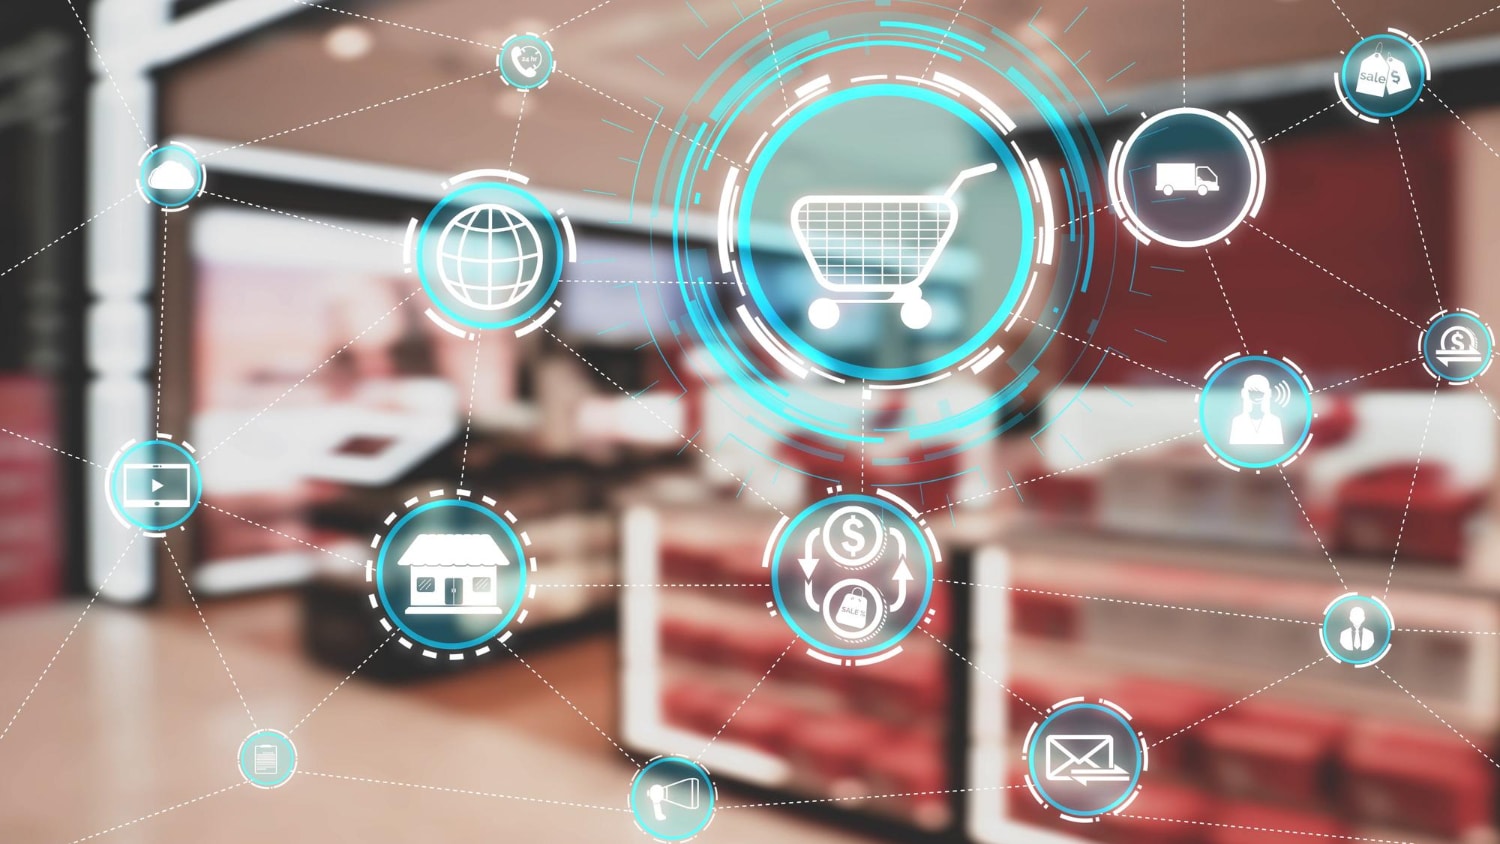 Iconos de tecnología conectados en un entorno de tienda, simbolizando la automatización en el comercio electrónico.